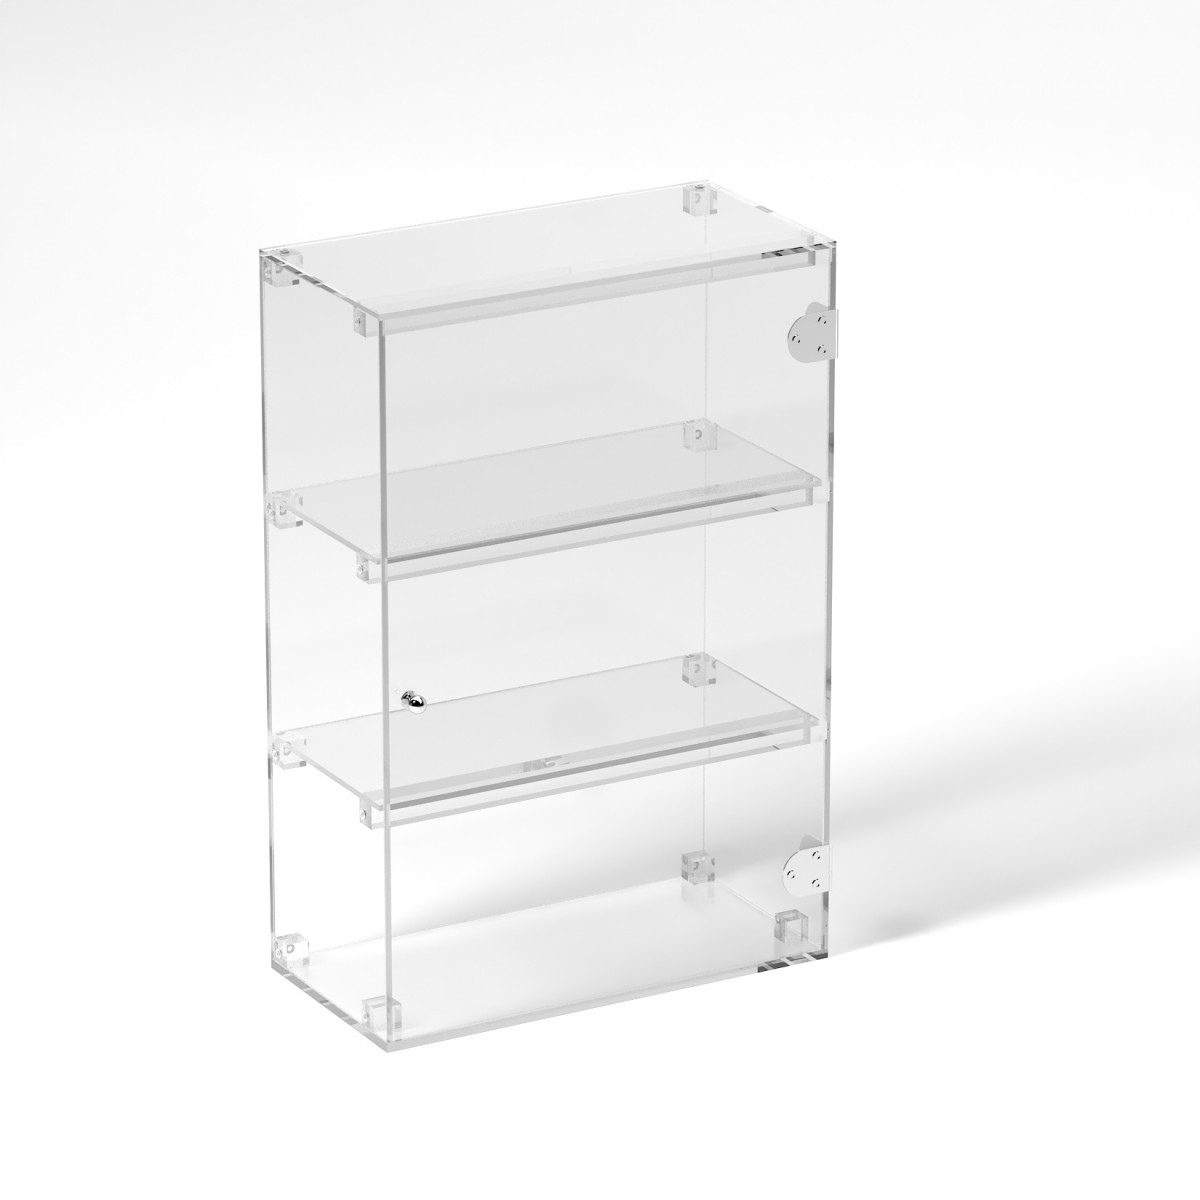 E-805 VET - Ampia vetrina espositiva in plexiglass trasparente a 3 ripiani - Misure: 40 x 20 x h60 cm